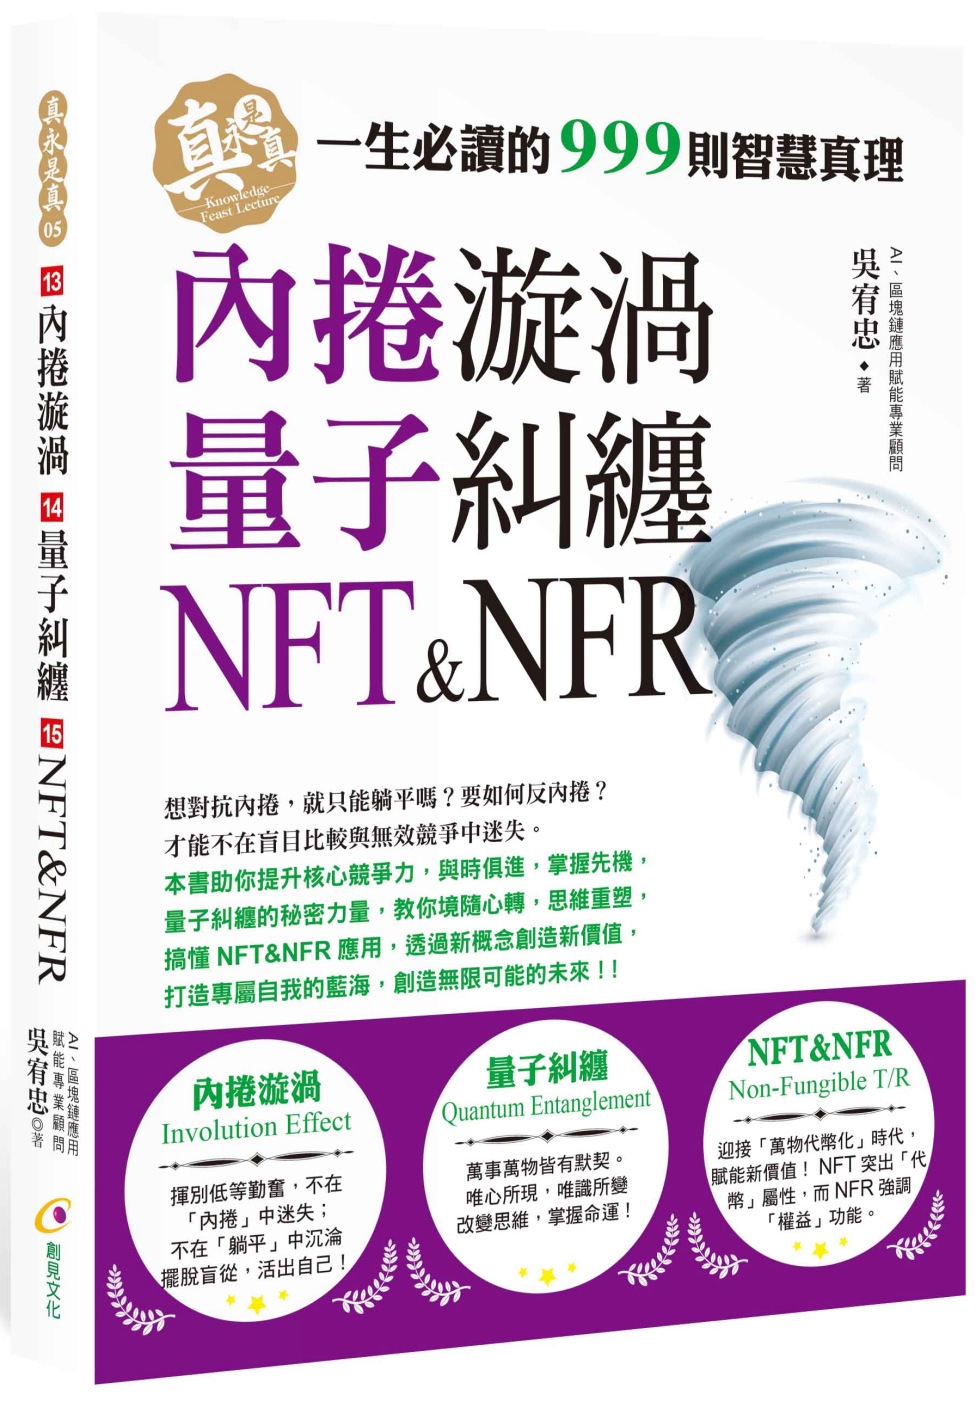 內捲漩渦、量子糾纏、NFT&NFR